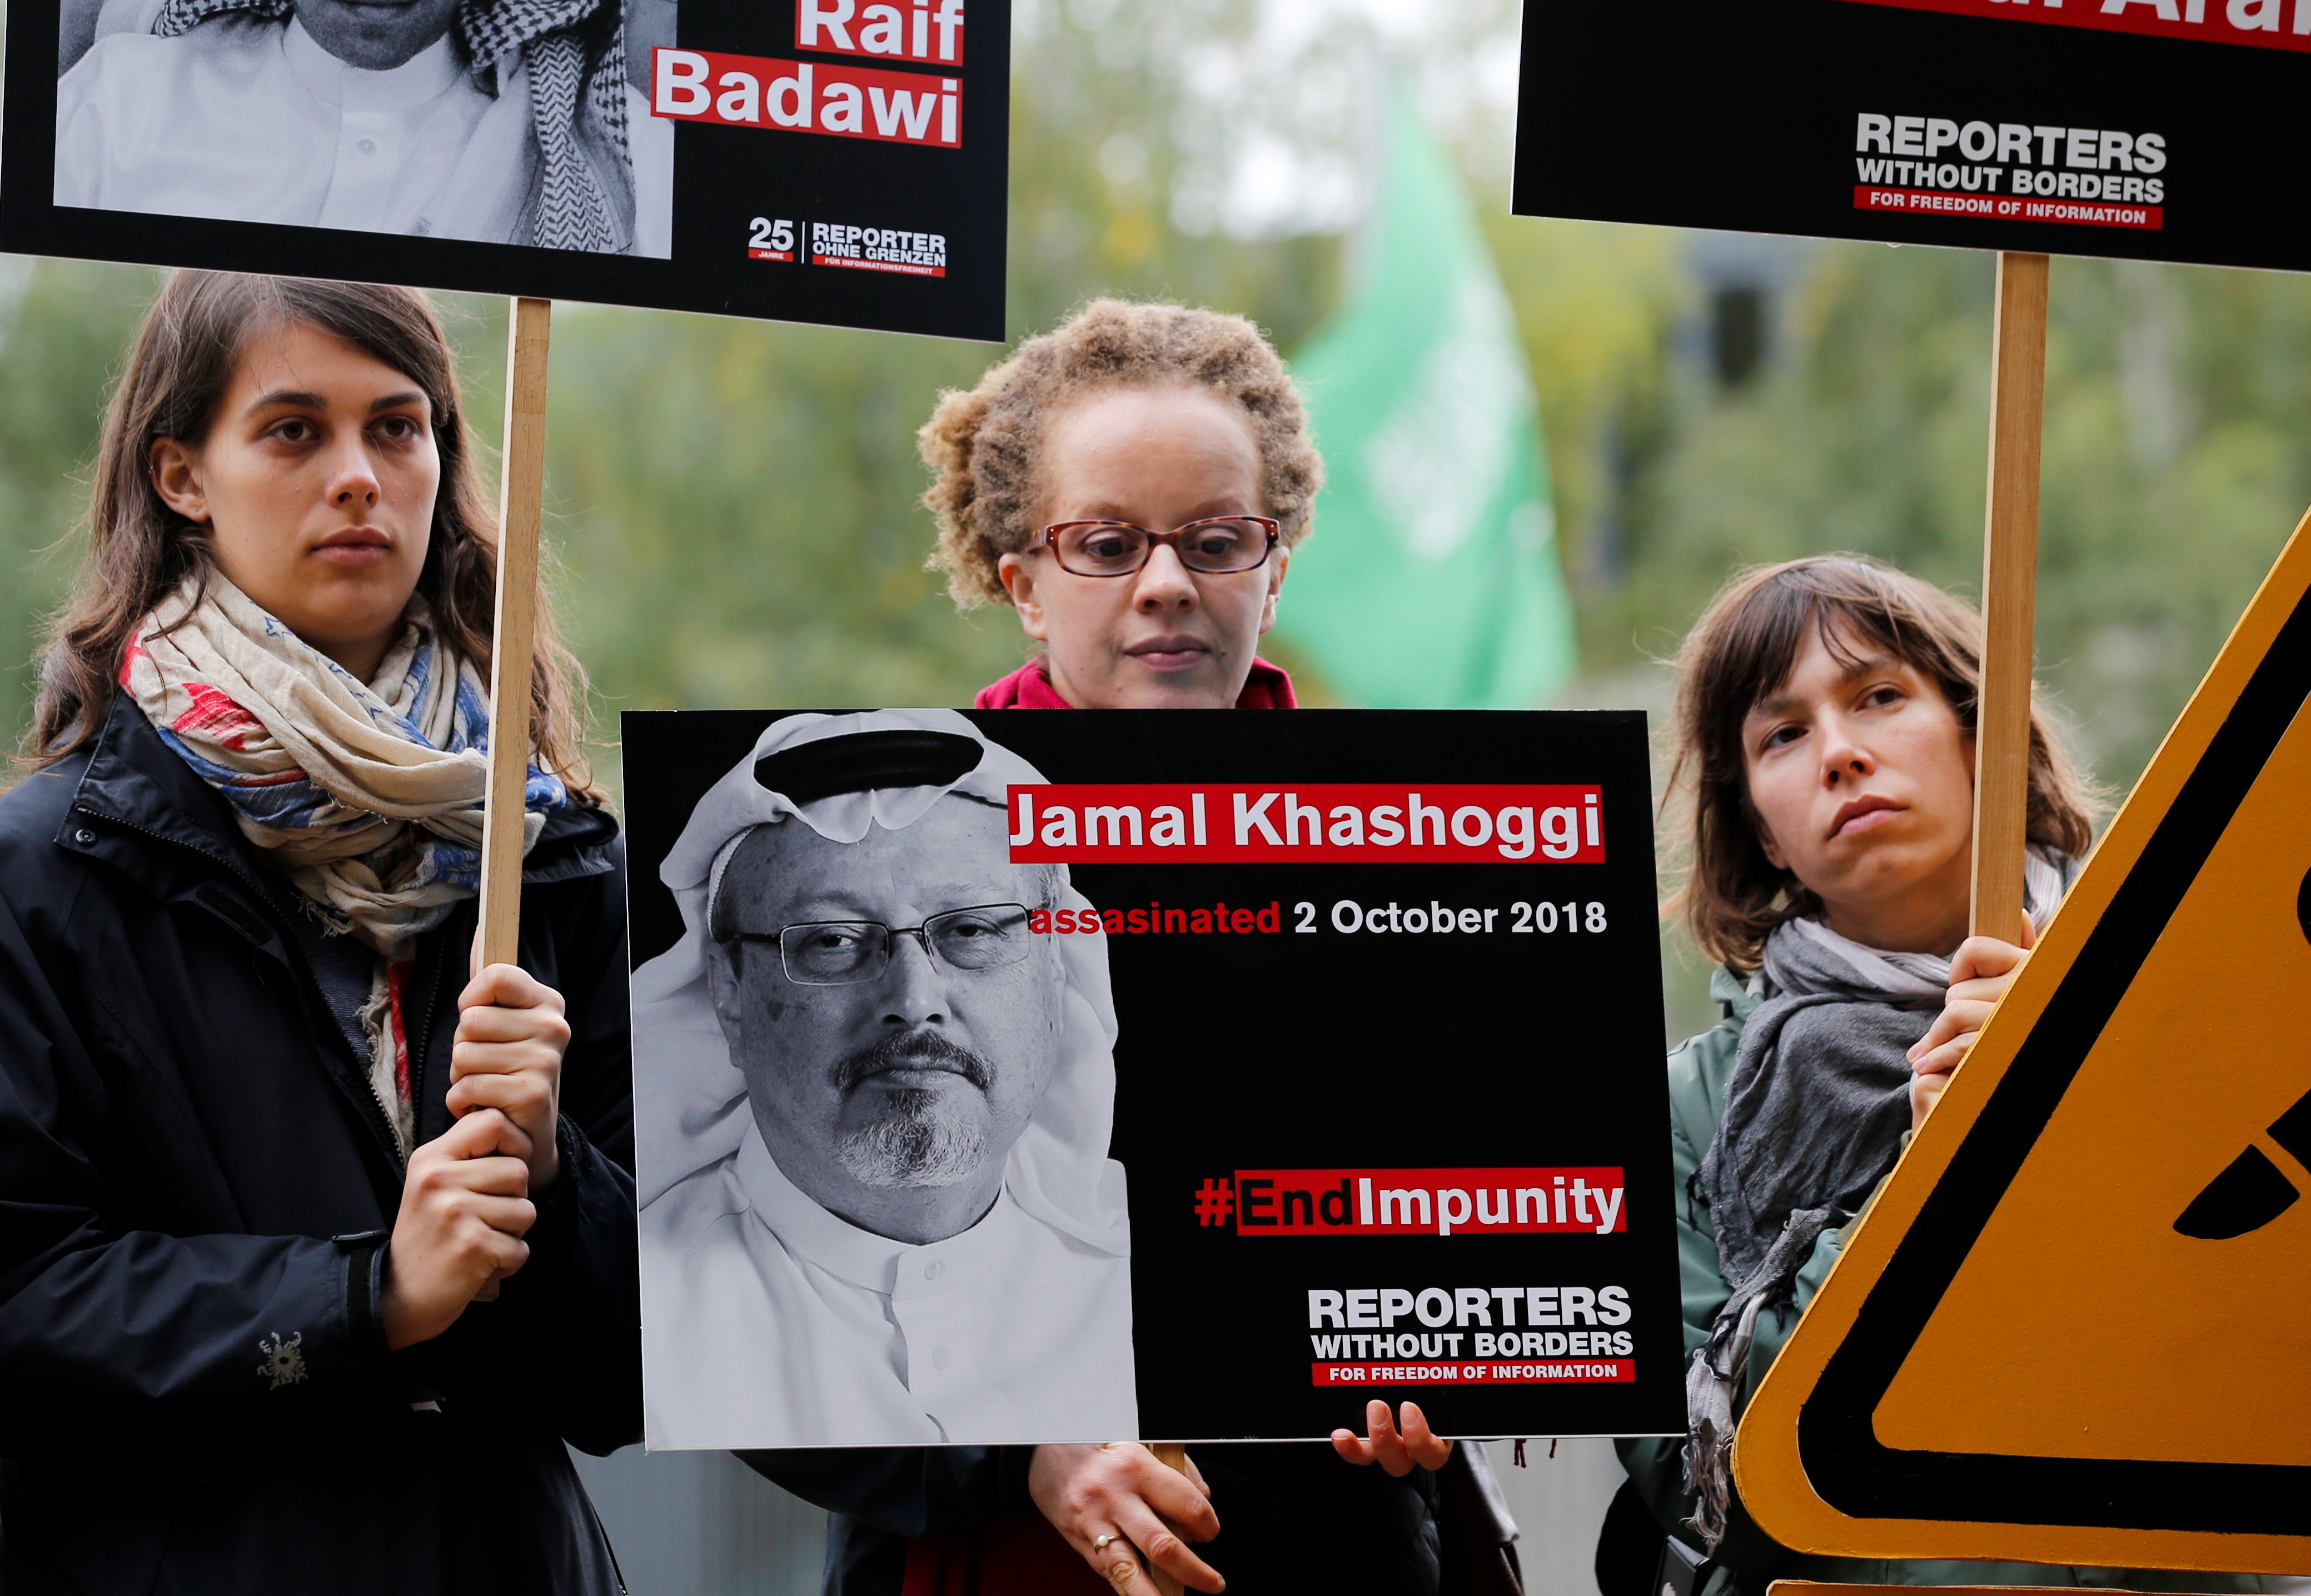 US Lawmakers Seek Release of Intelligence Report on Khashoggi Murder